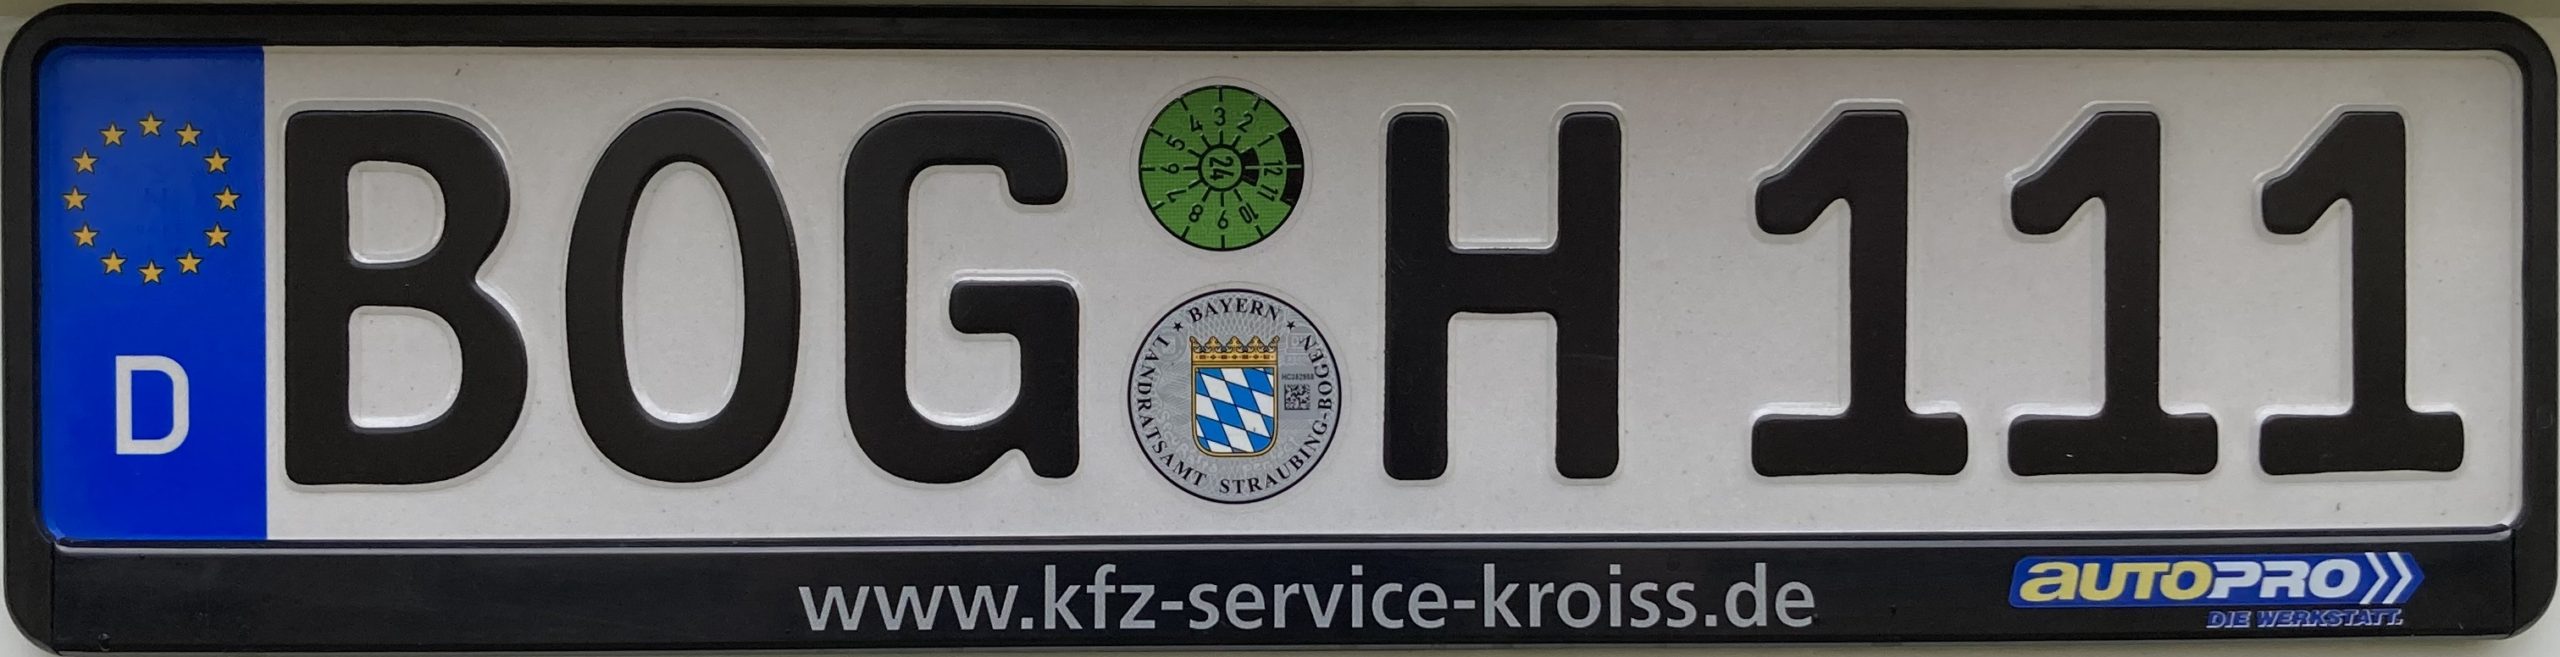 Registrační značky Německo - BOG - Bogen, foto: www.podalnici.cz